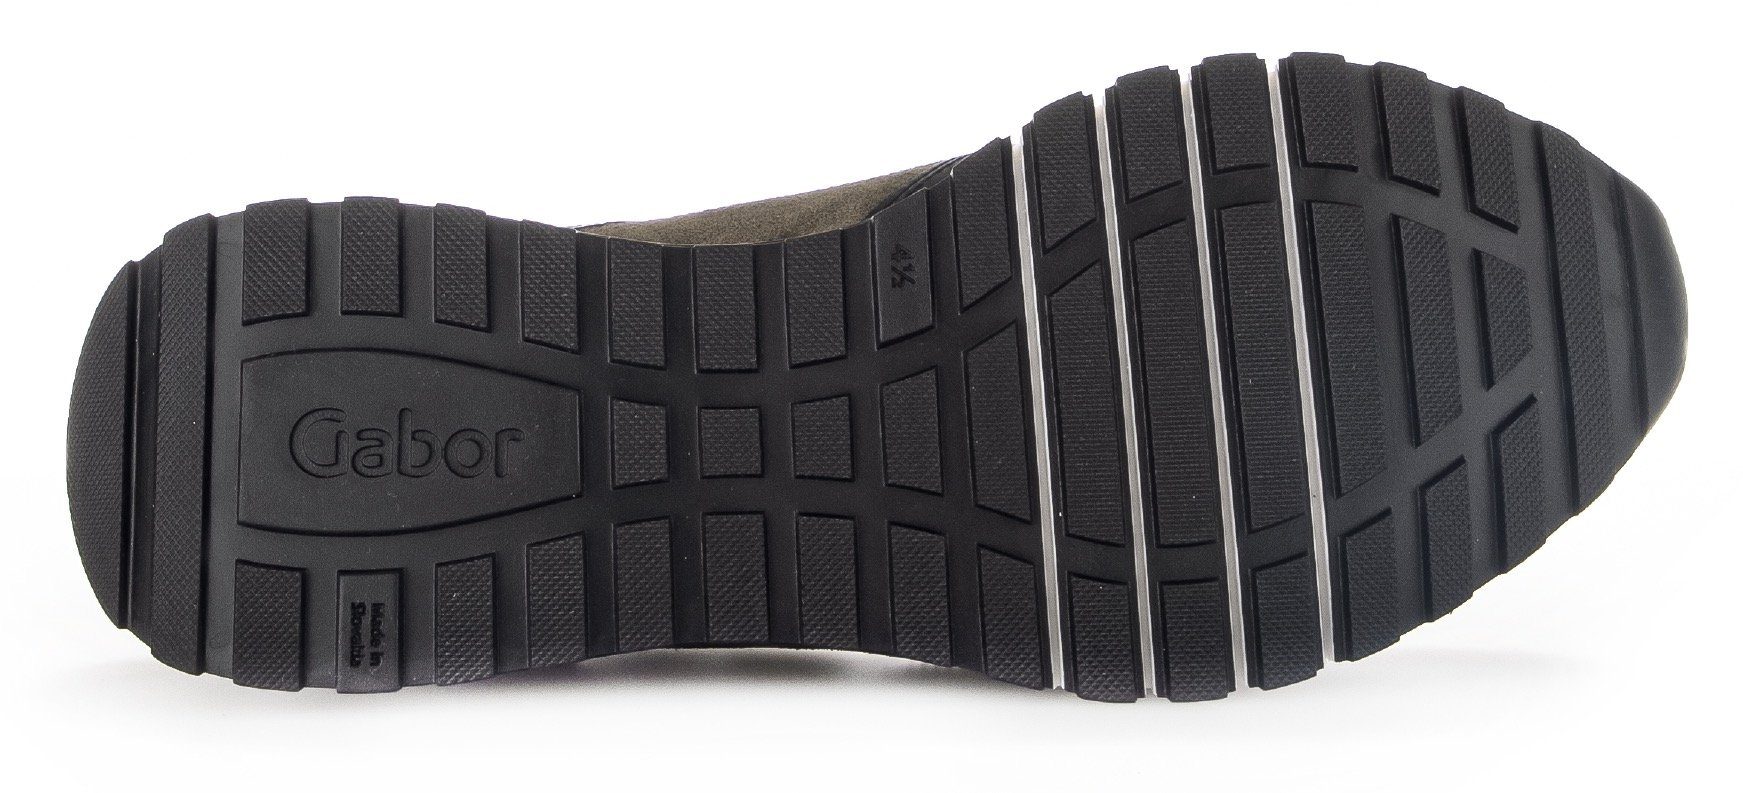 Gabor Turin Keilsneaker Komfort-Weite schwarz-taupe H in (sehr weit)